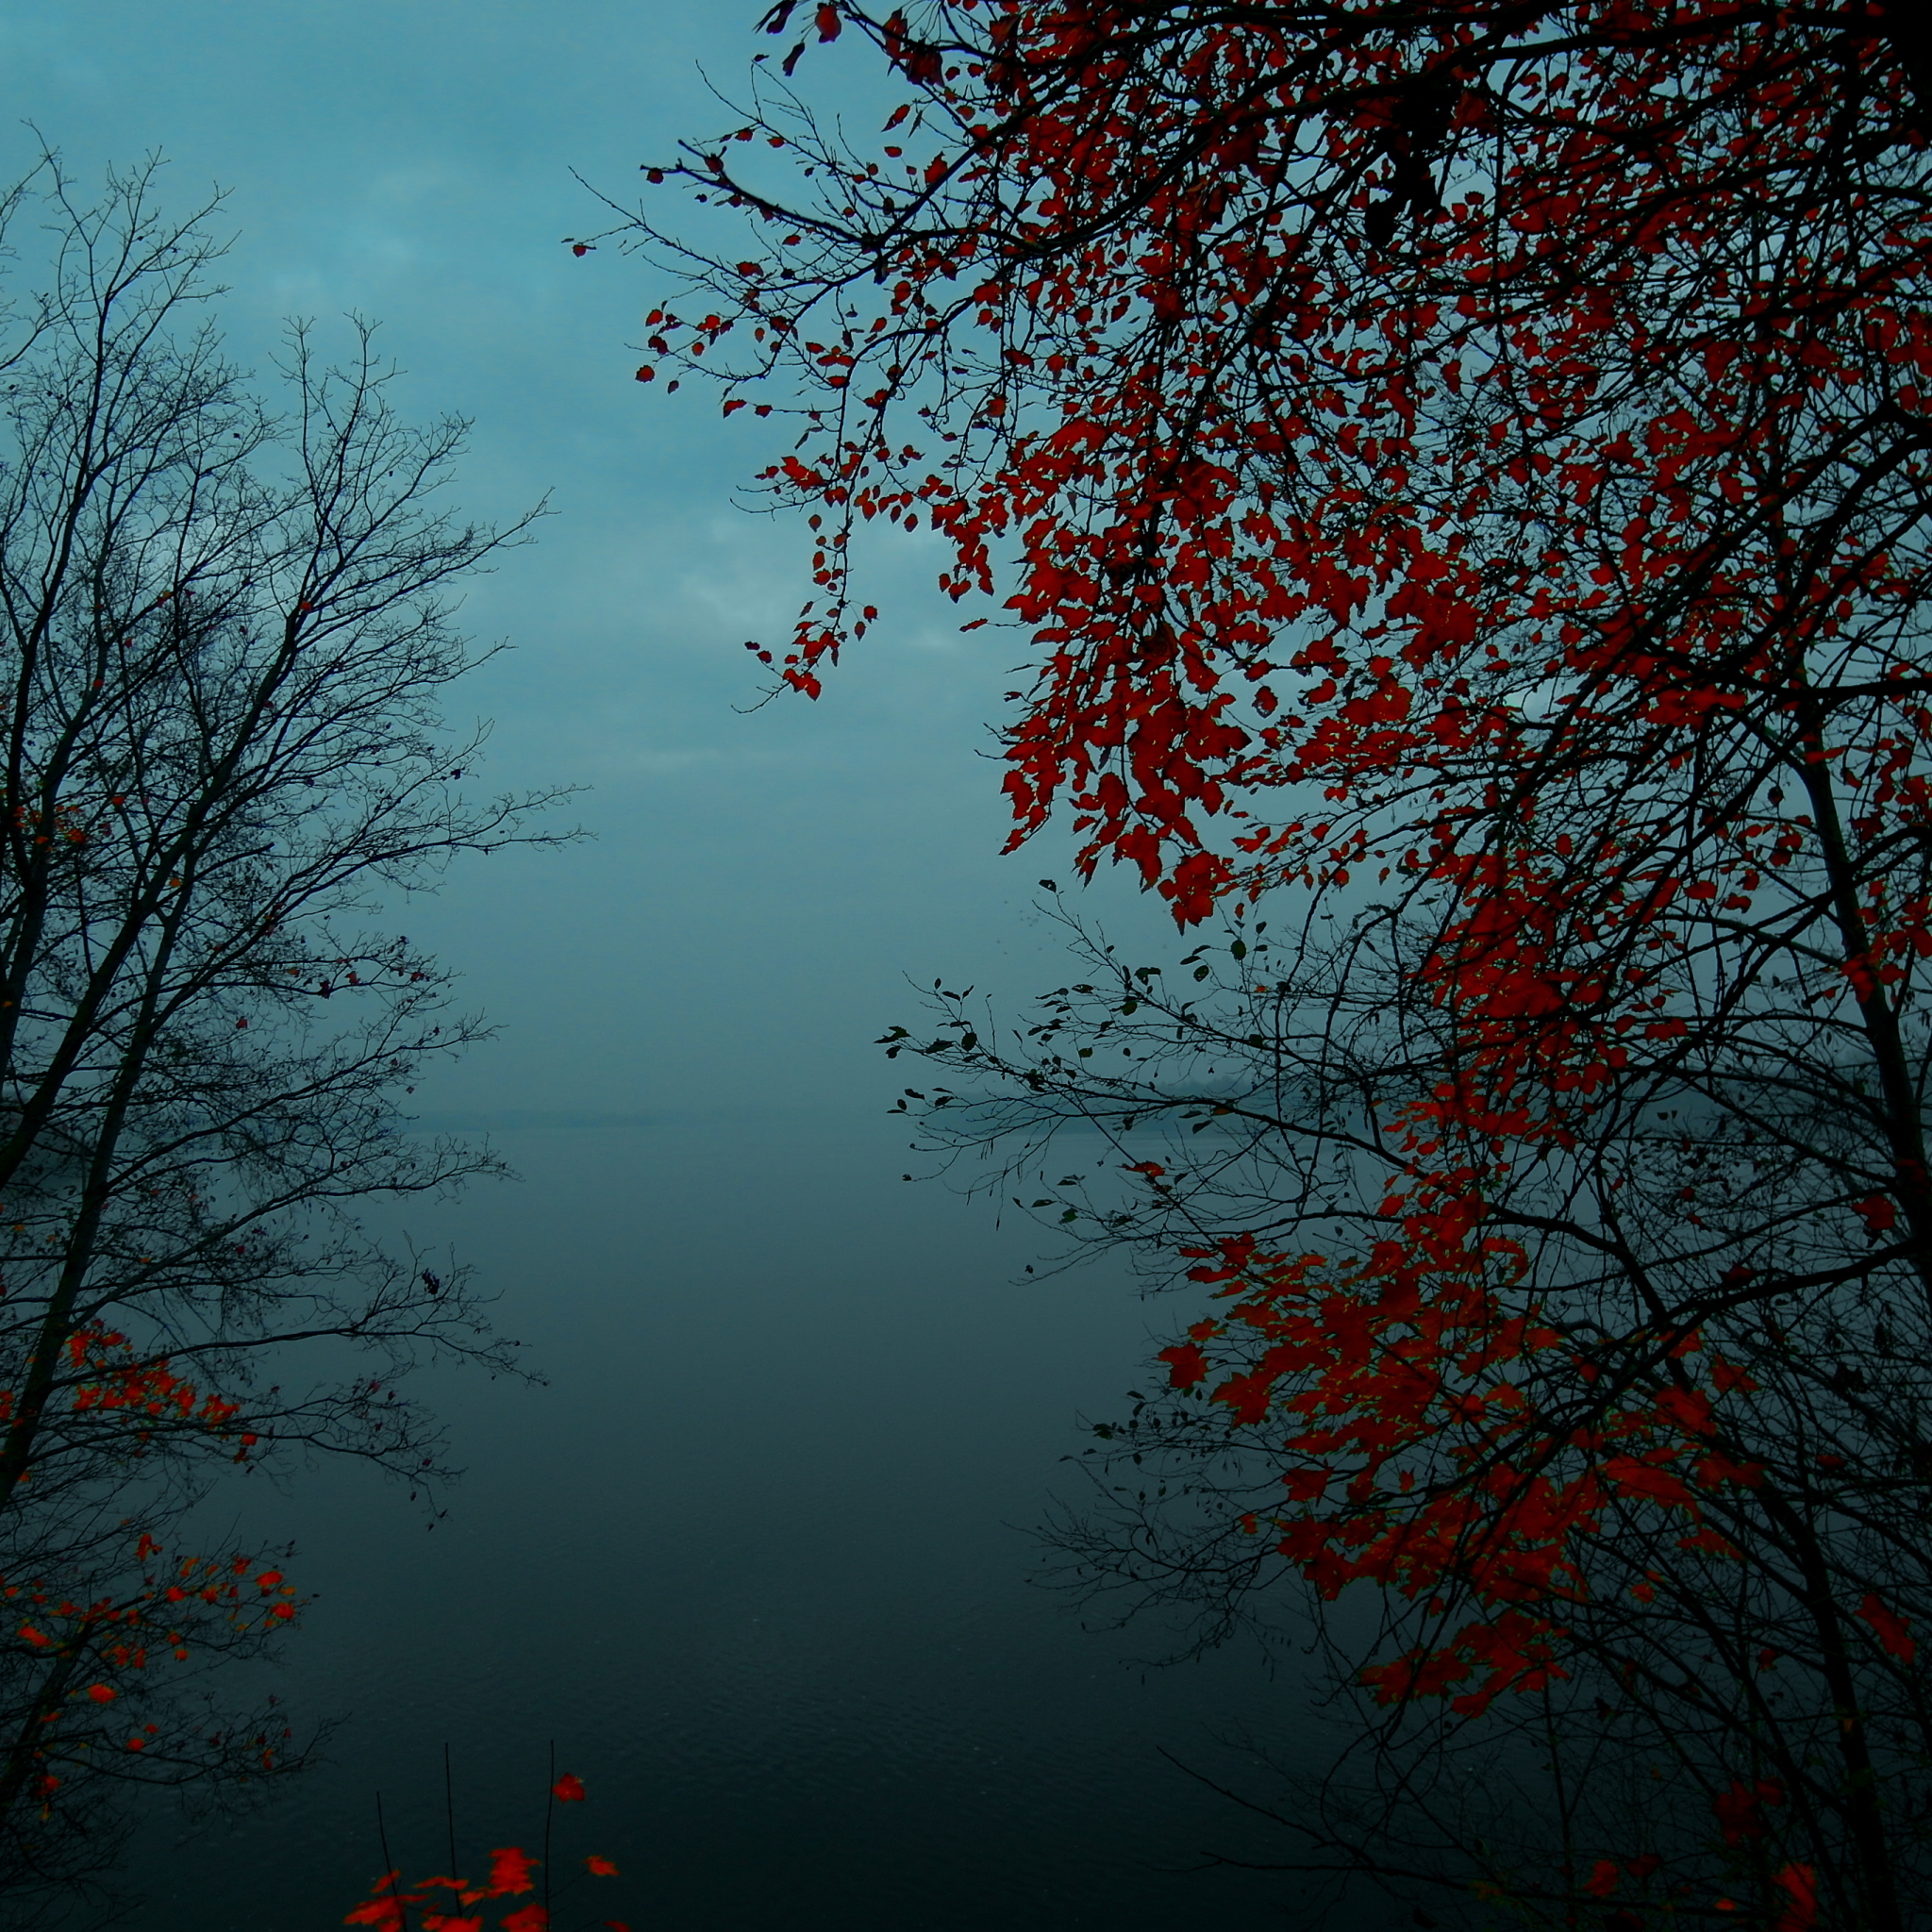 Foggy Autumn Forest